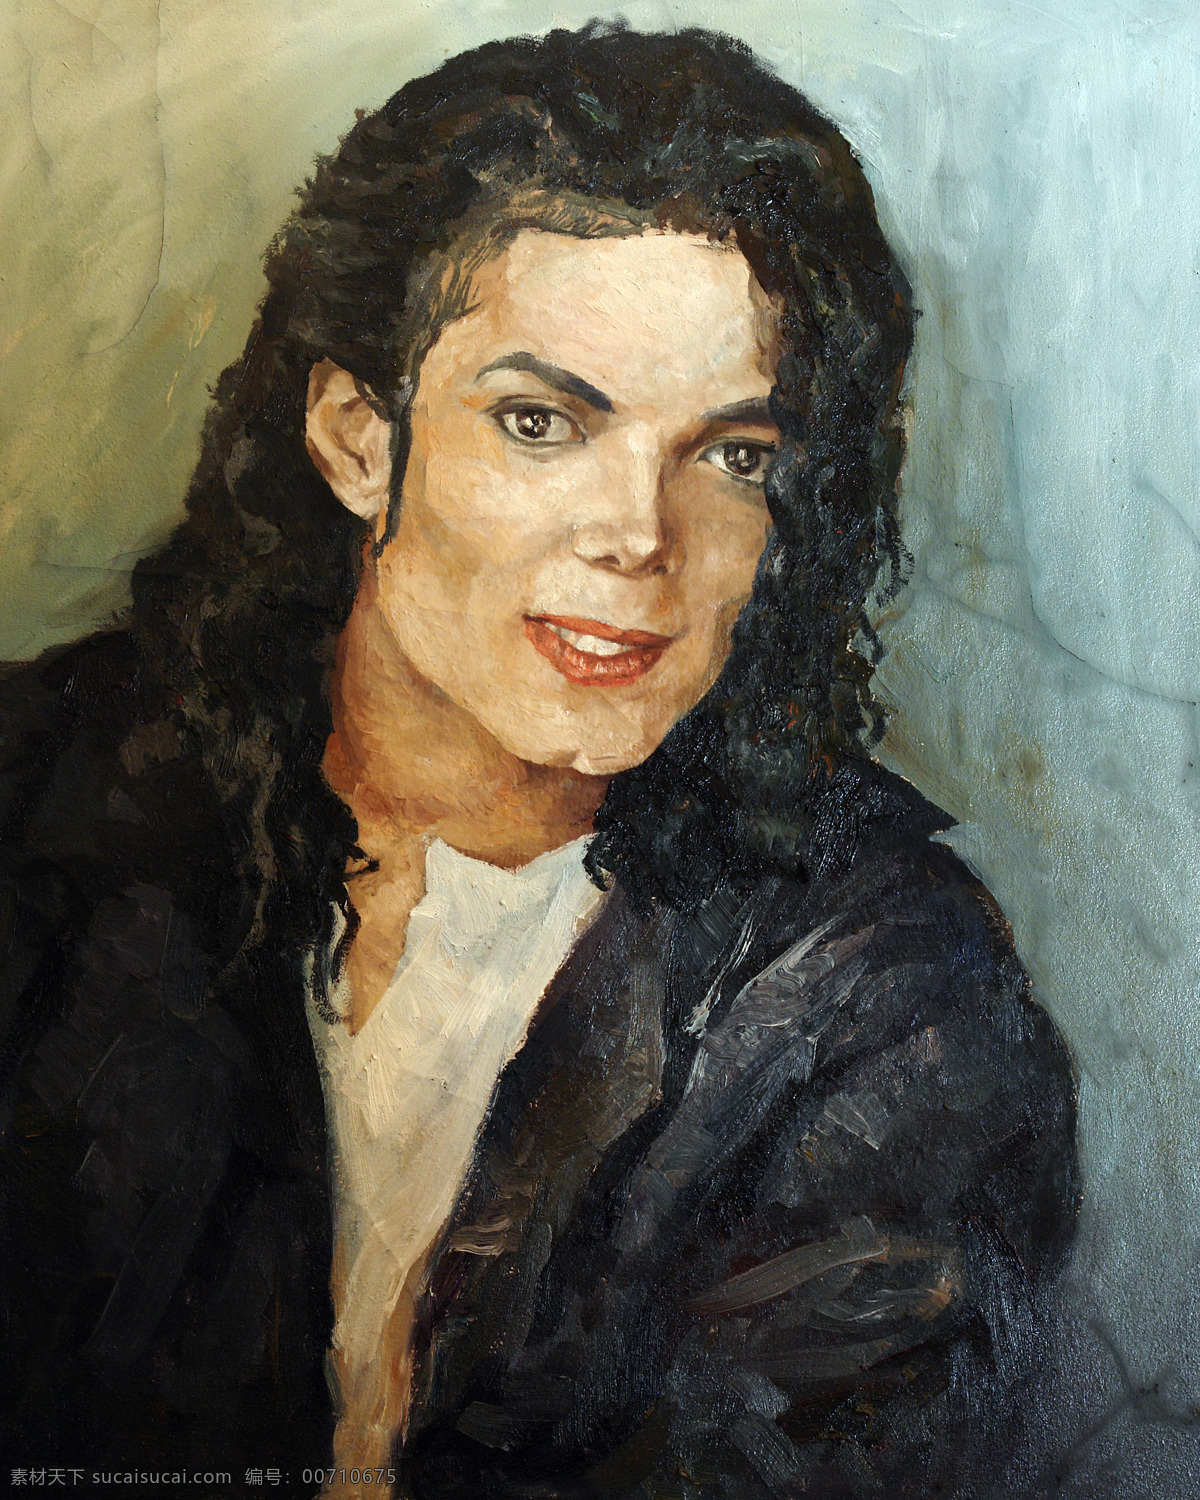 绘画 绘画书法 迈克杰克逊 明星偶像 头像 文化艺术 艺术 迈克 杰克逊 设计素材 模板下载 油画 装饰素材